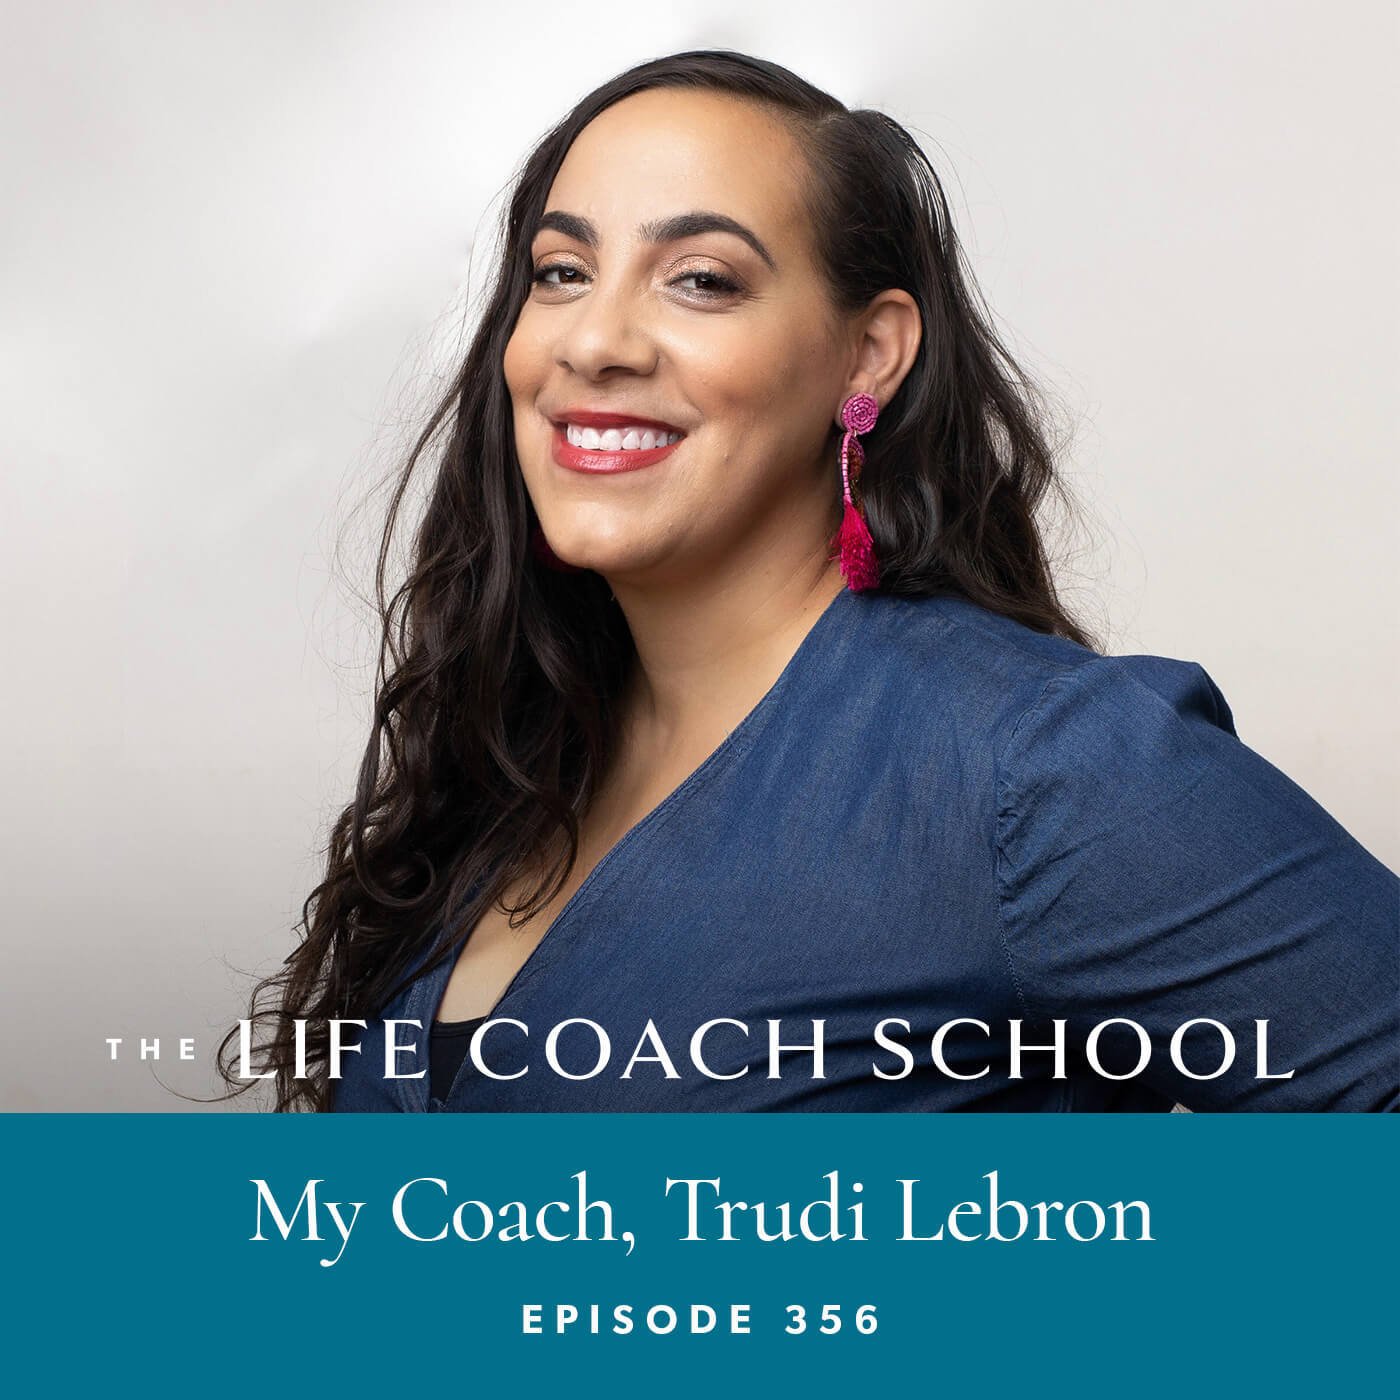 The Life Coach School Podcast with Brooke Castillo | My Coach, Trudi Lebron